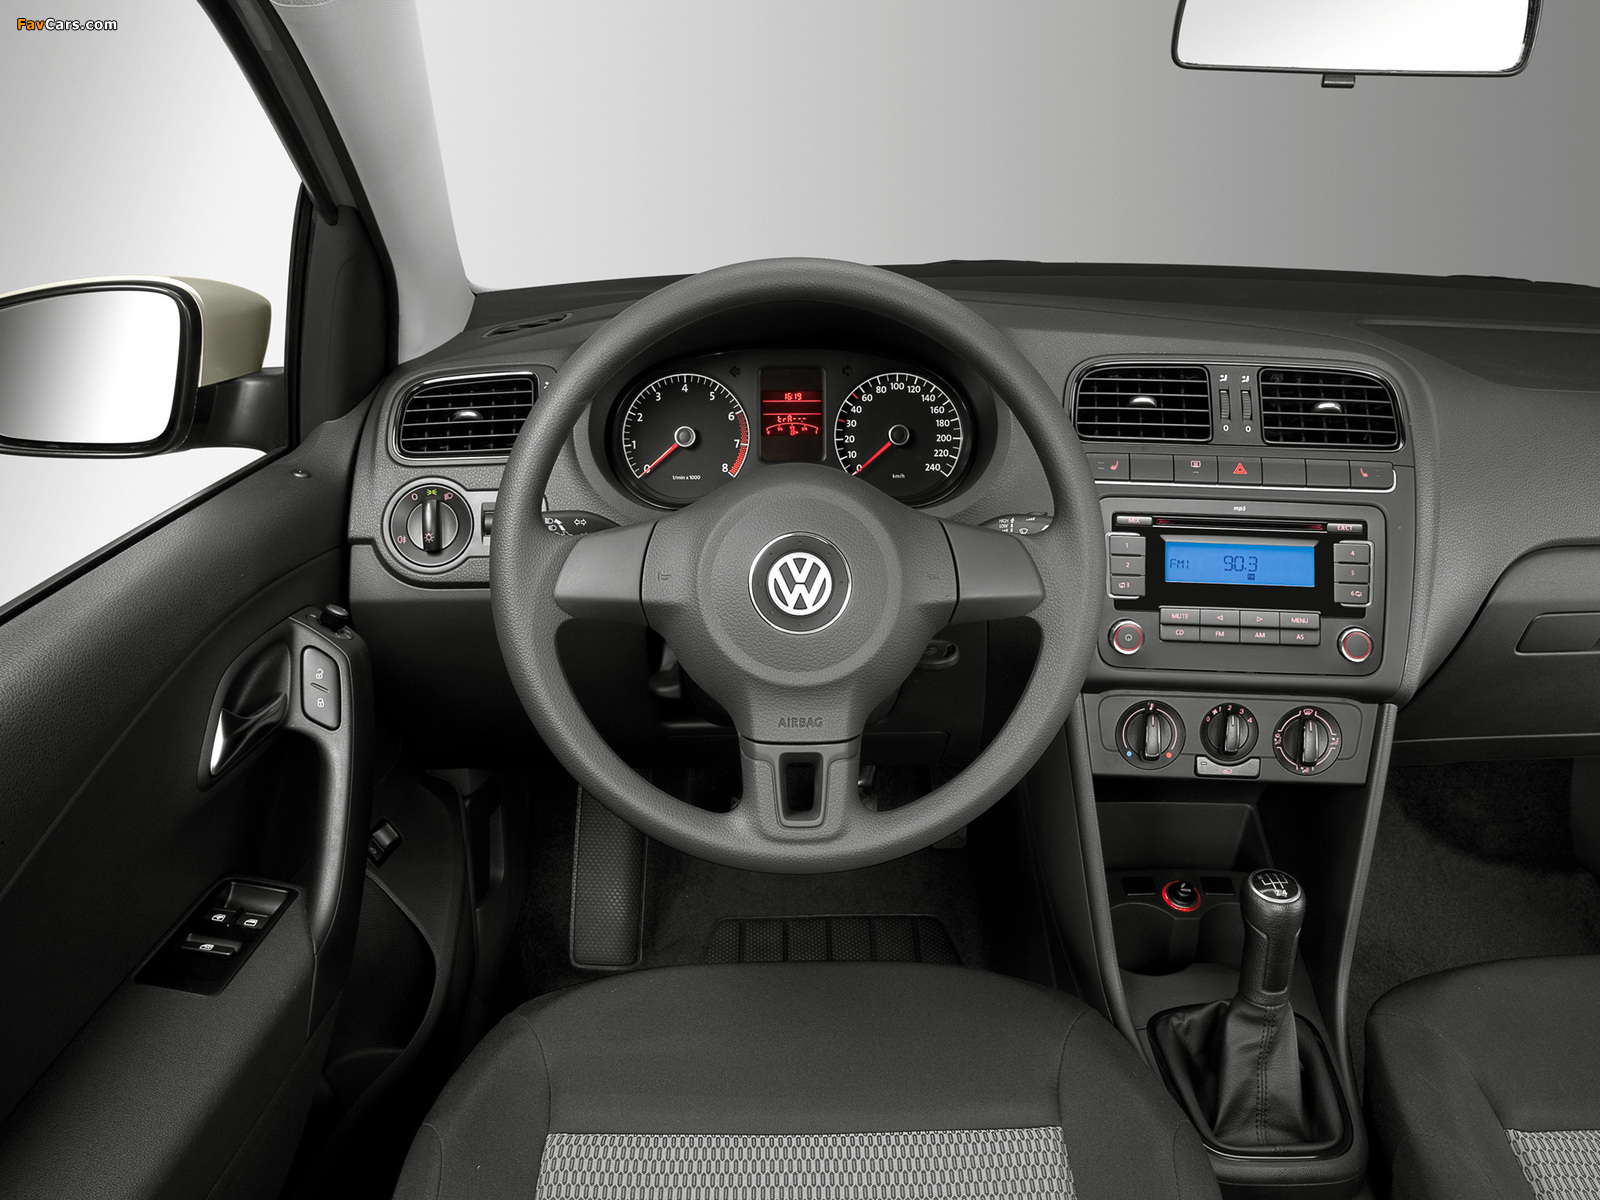 Images of Volkswagen Polo Sedan (V) 2010 (1600 x 1200)